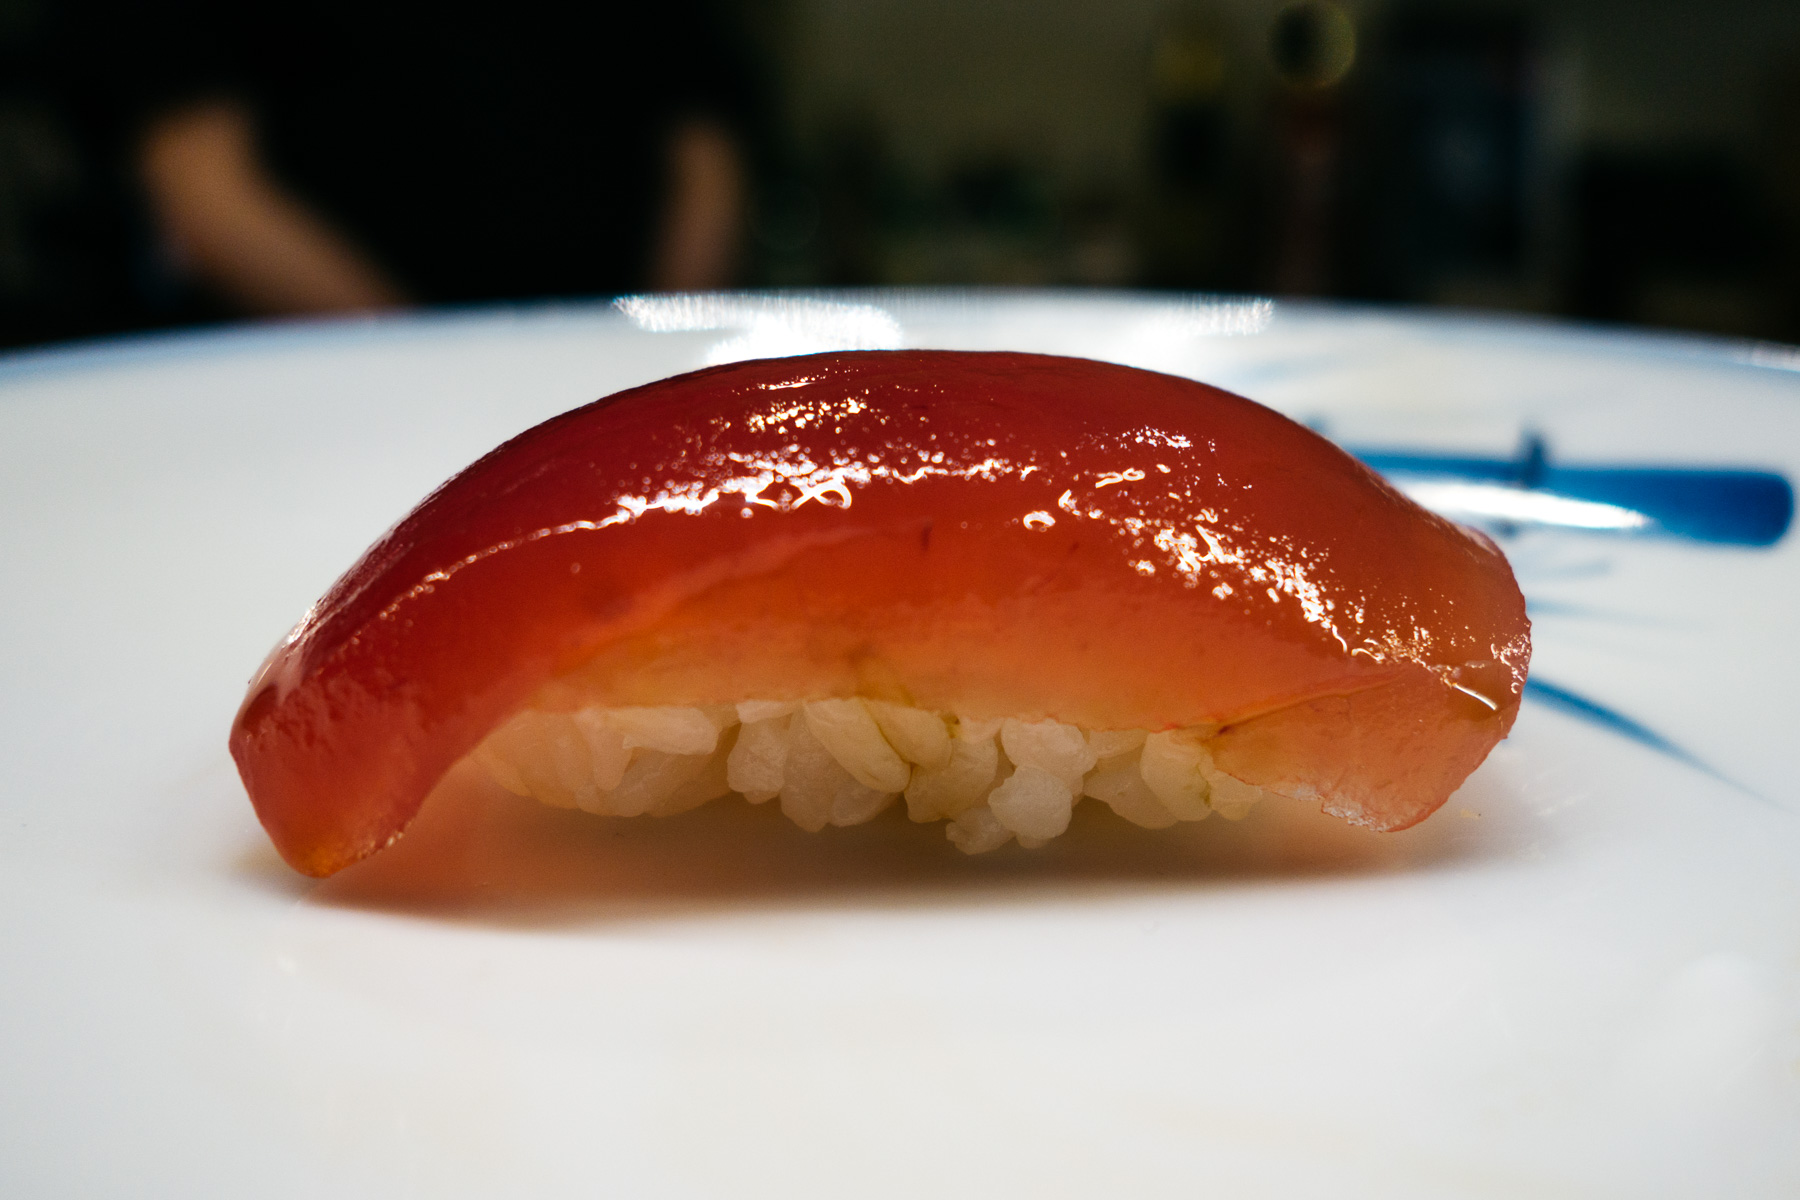 Akami (chude mieso tuńczyka żółtopłetwego)